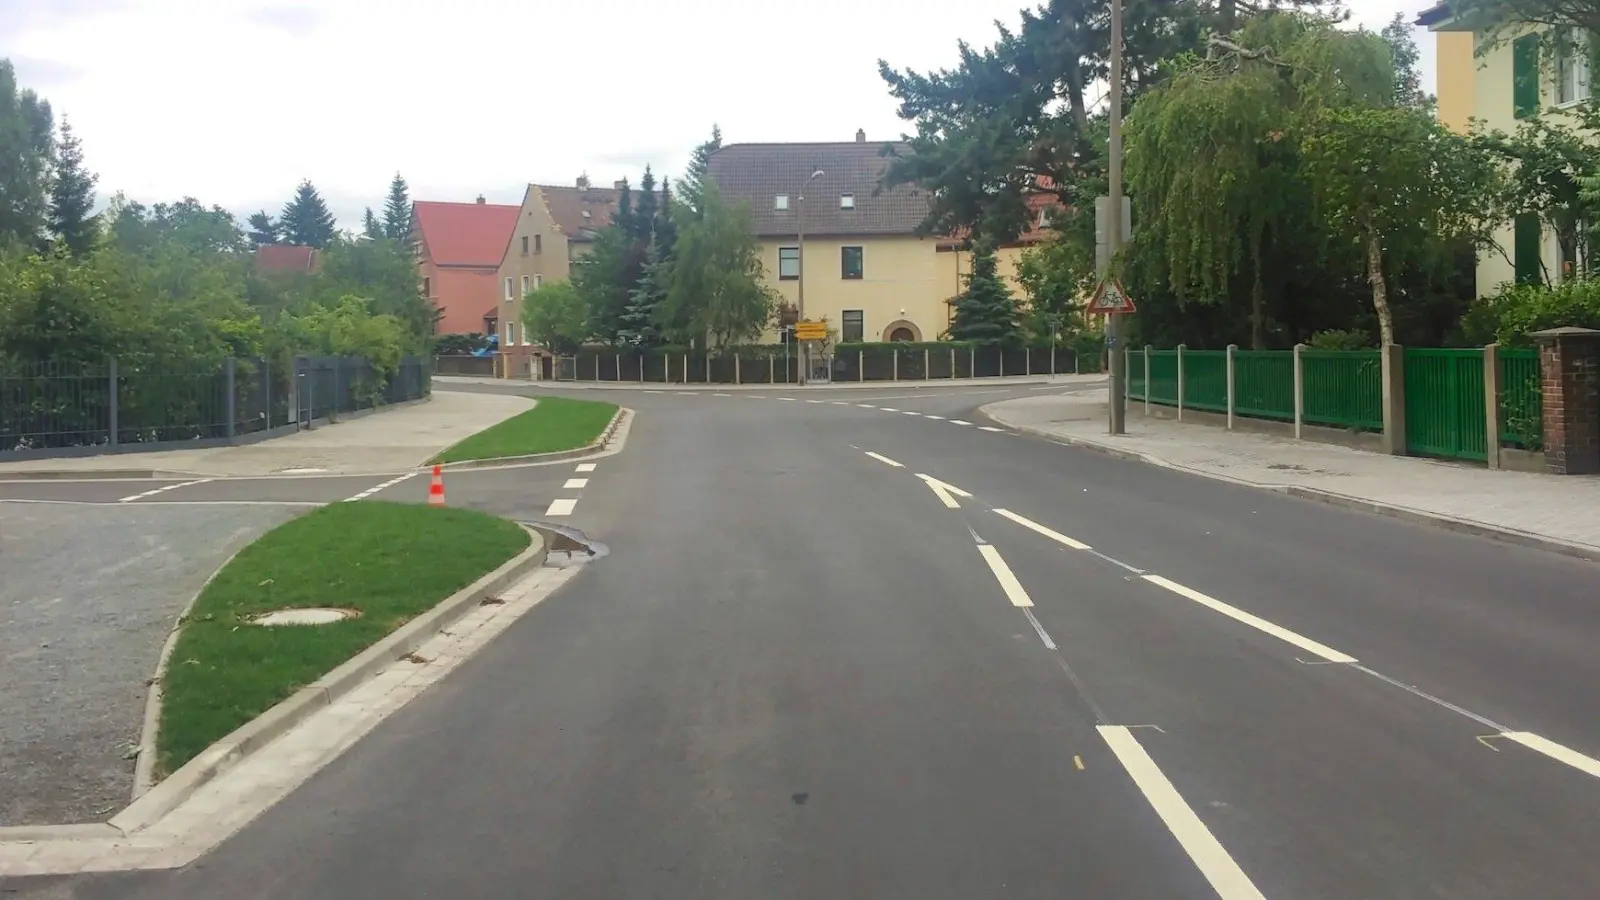 Auf der Sommerfelder Straße aus Richtung Kreuzung fehlt der Hinweis, dass die Hauptstraße Richtung Panitzsch abbiegt. Auch an an der Einmündung zum und aus dem Auenweg fehlen Schilder. (Foto: taucha-kompakt.de)